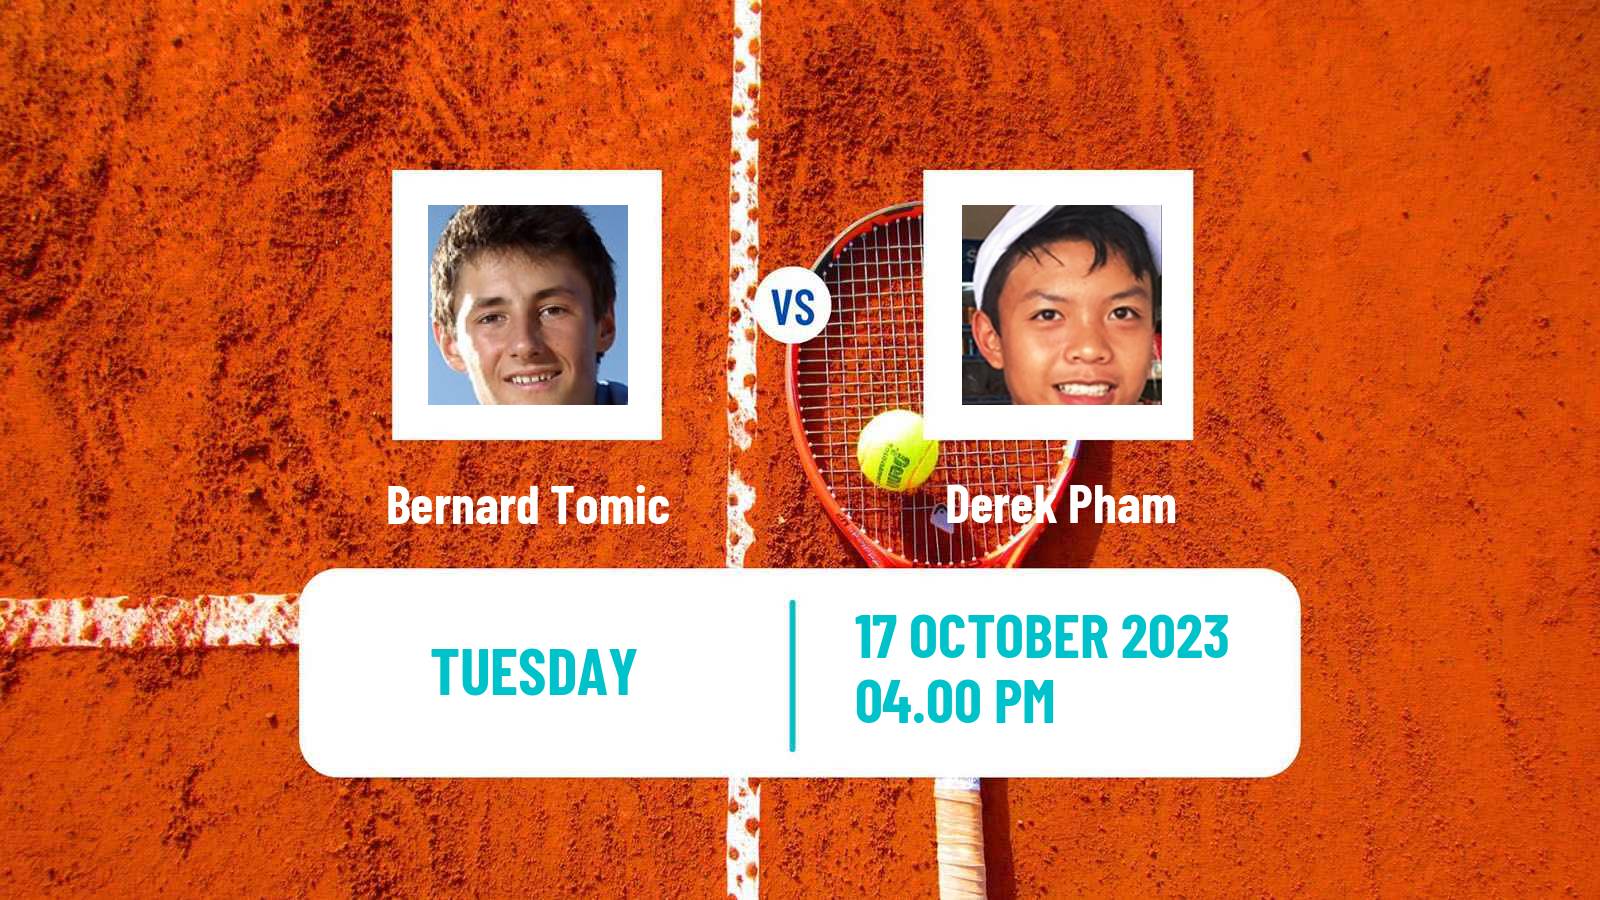 Tennis ITF M15 Las Vegas Nv Men Bernard Tomic - Derek Pham